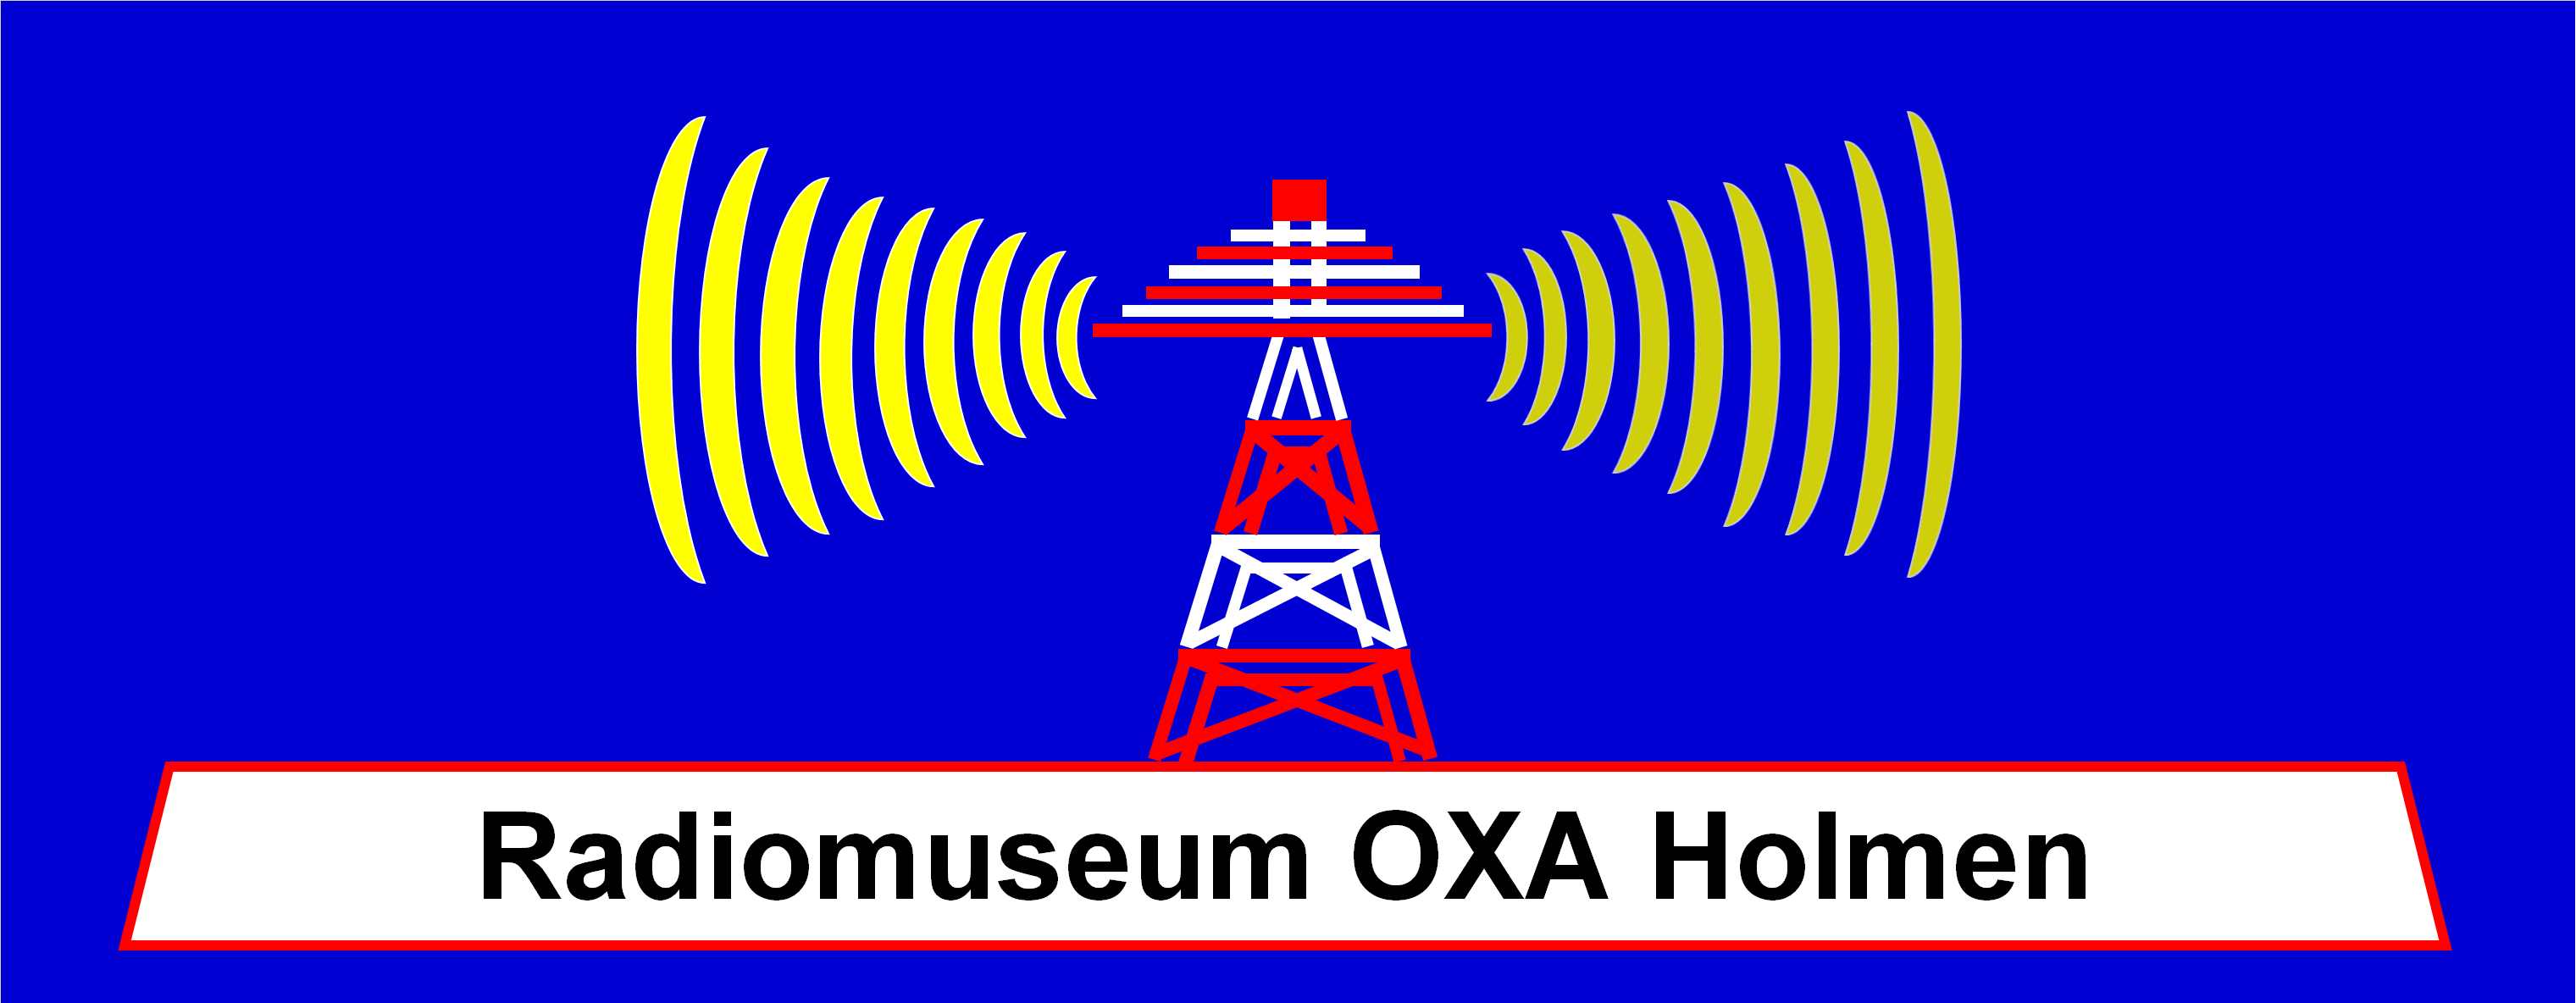 Radiomuseum OXA Holmen